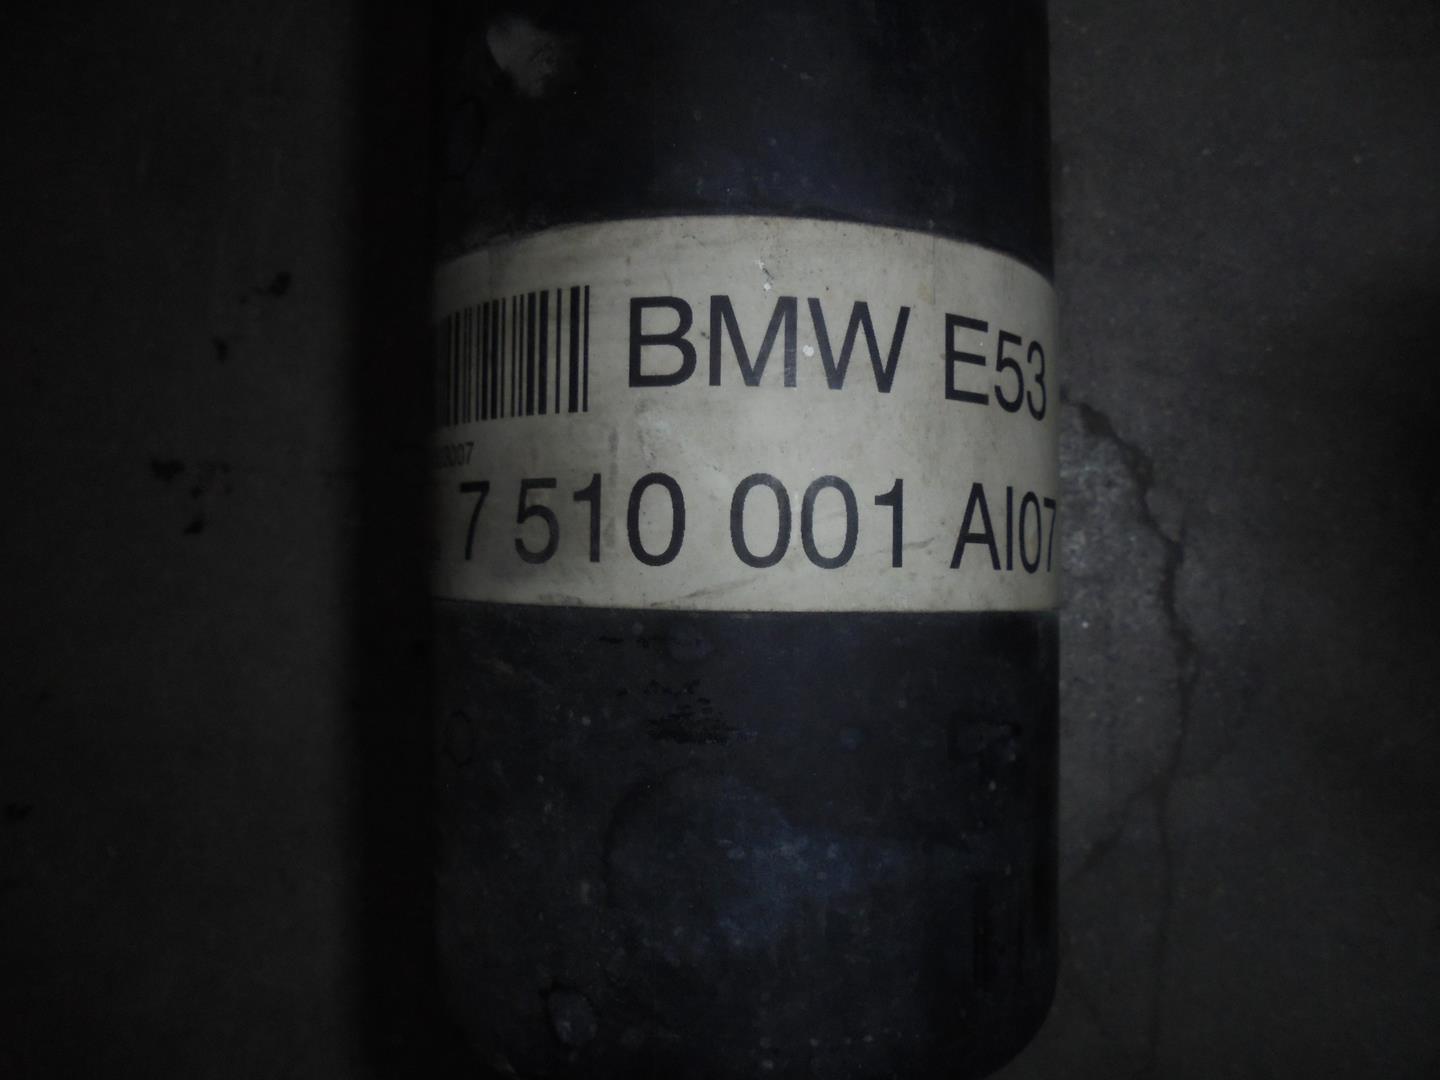 BMW X5 E53 (1999-2006) Greičių dėžės trumpas kardanas 7510001A107, BURRA3LADOB 19769938